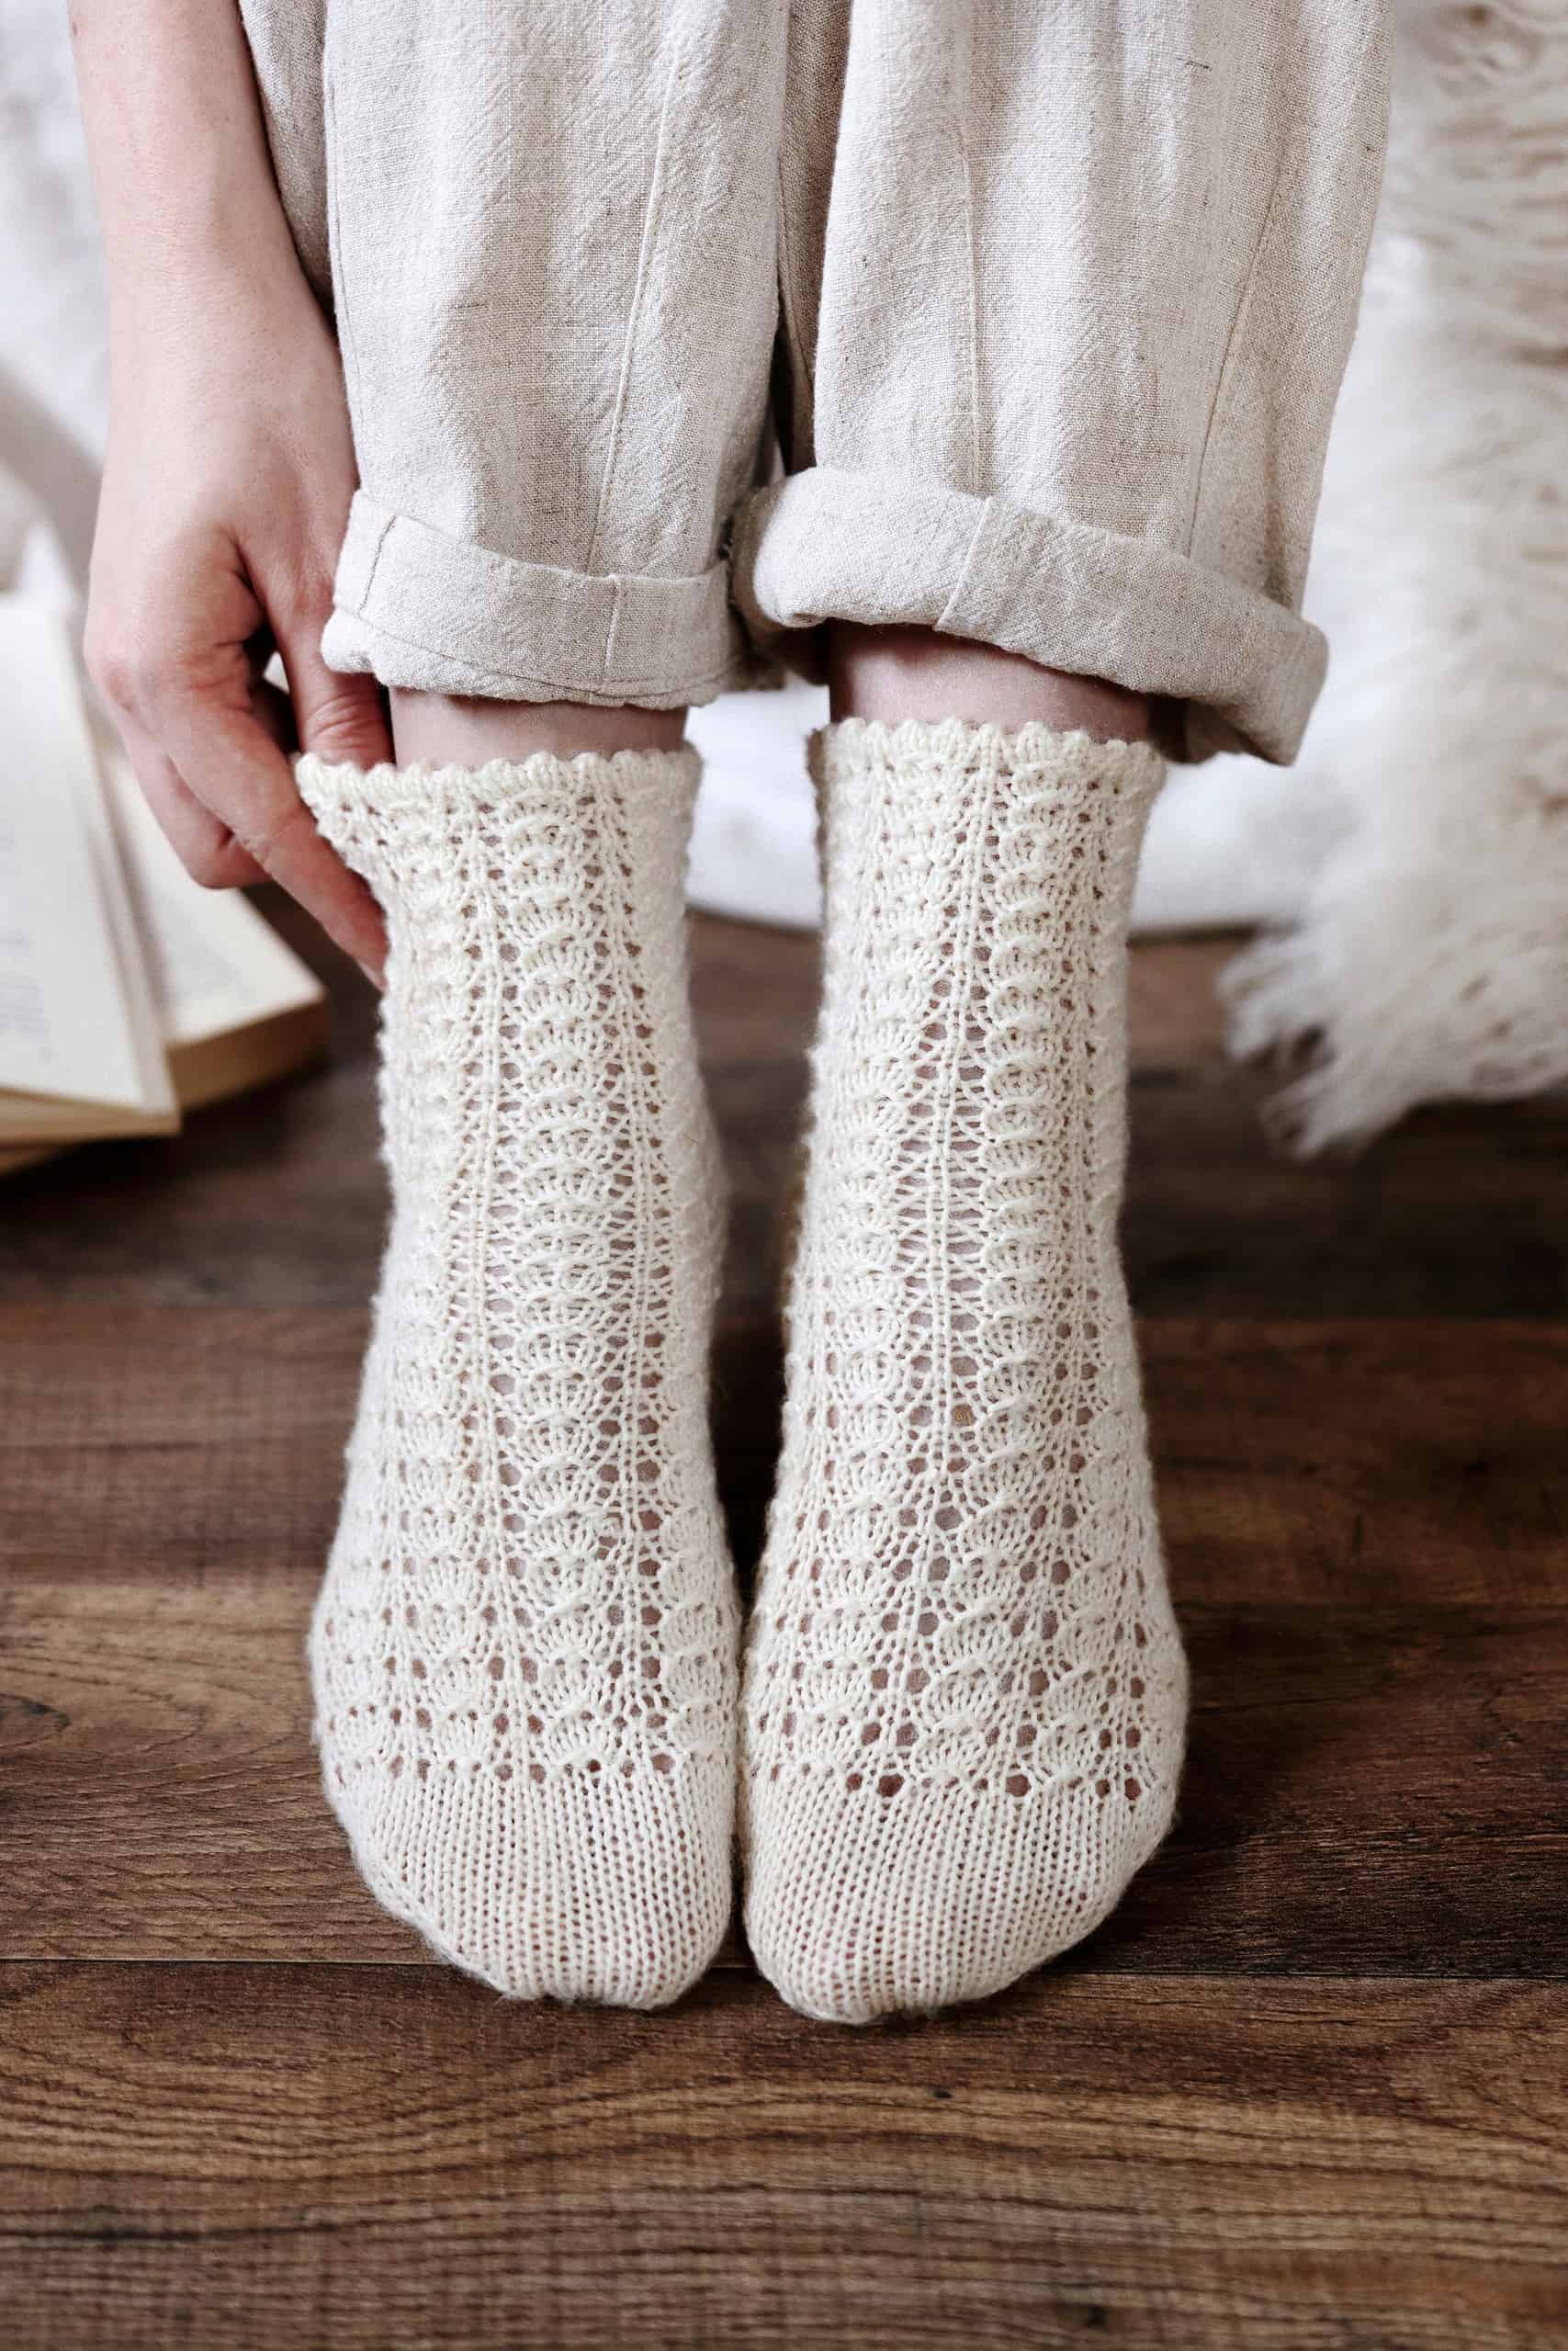 Beginner's lace socks, Knitting Patterns